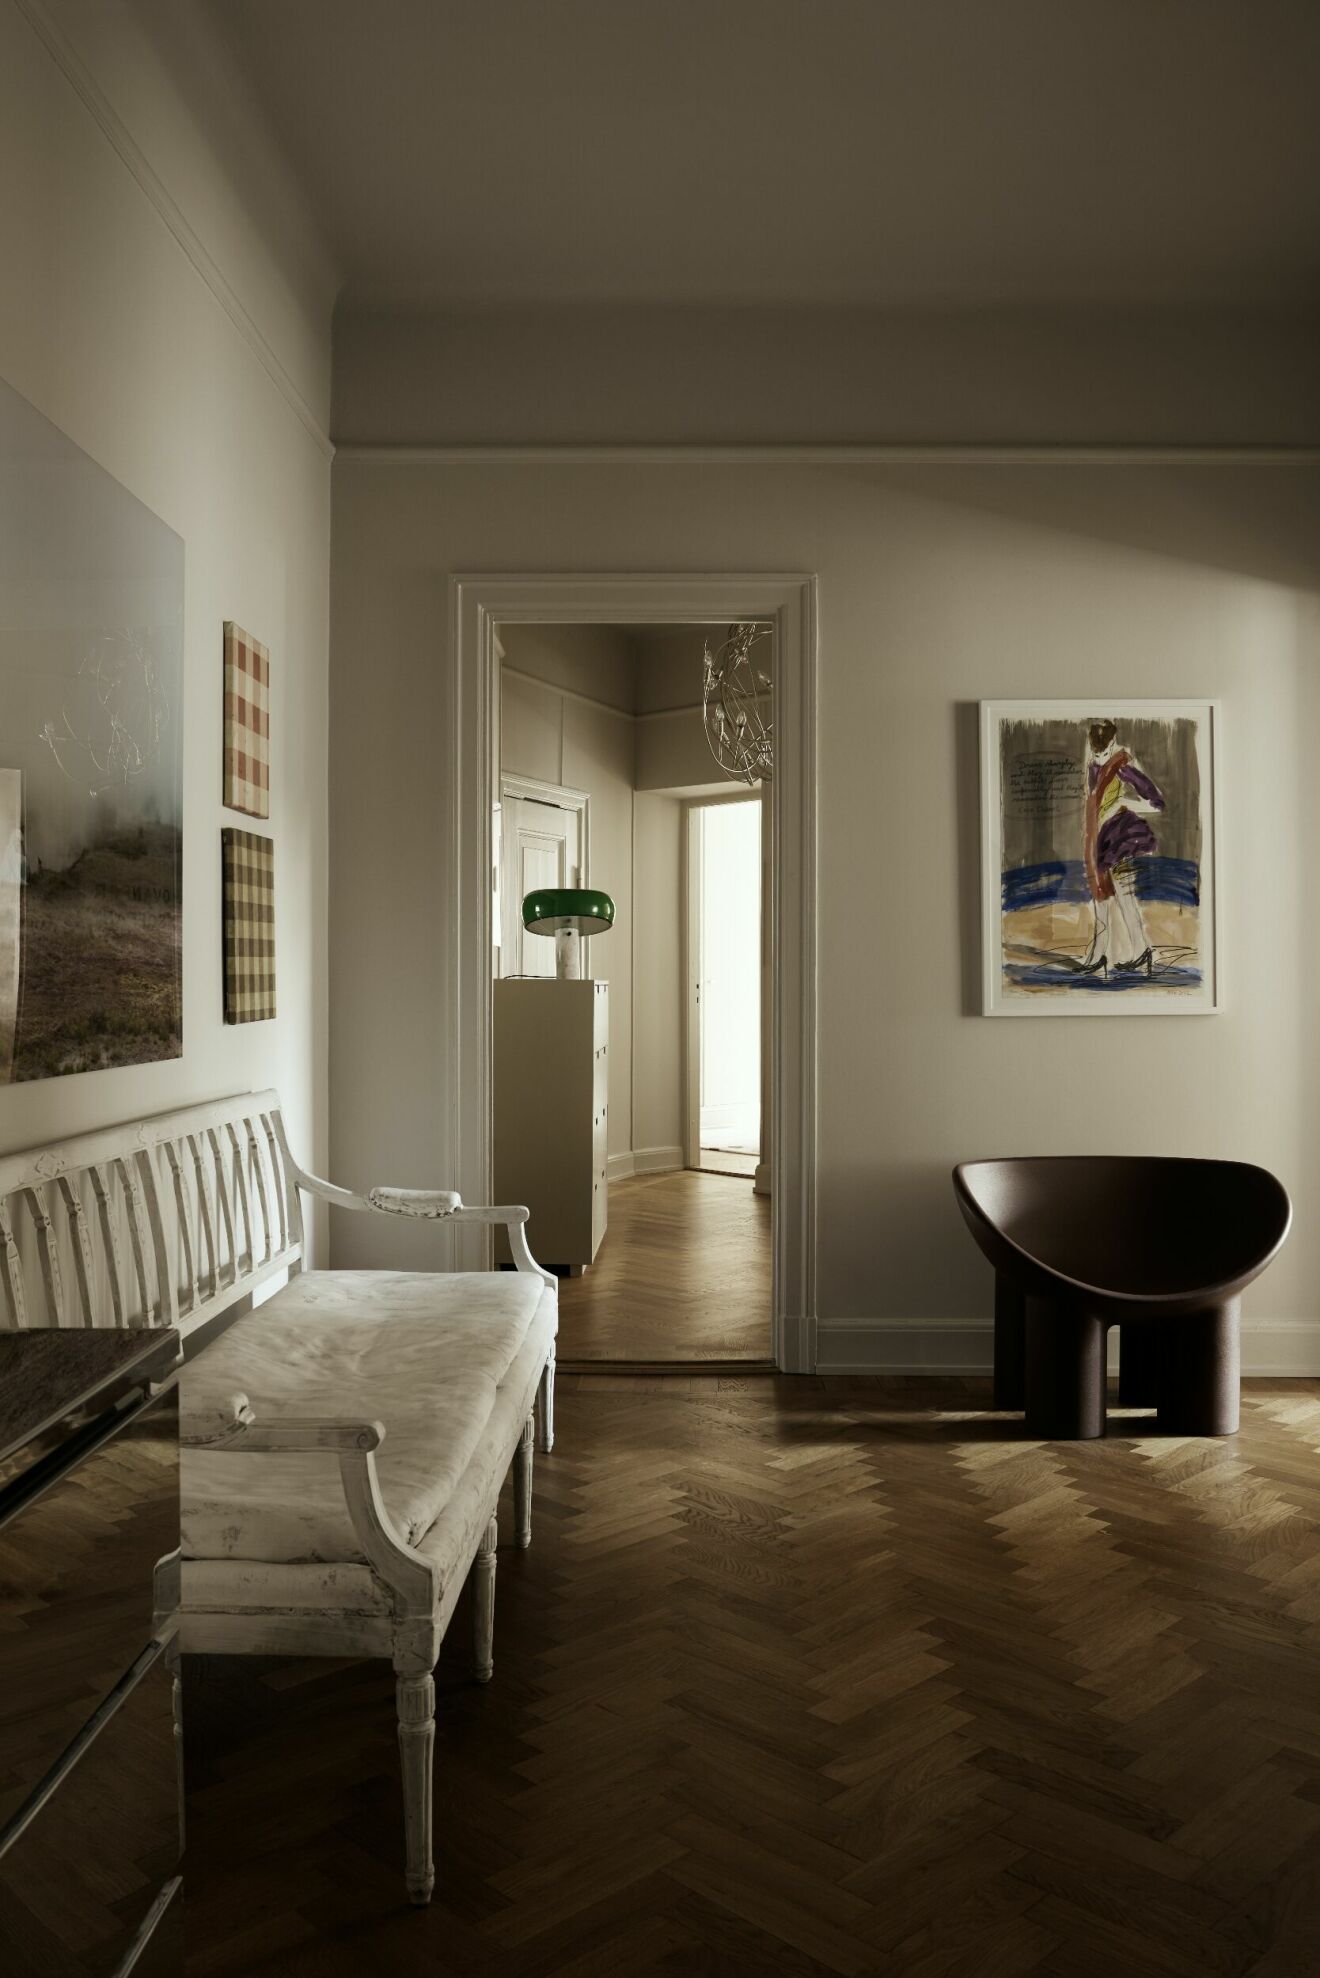 Gustaviansk soffa i hall.